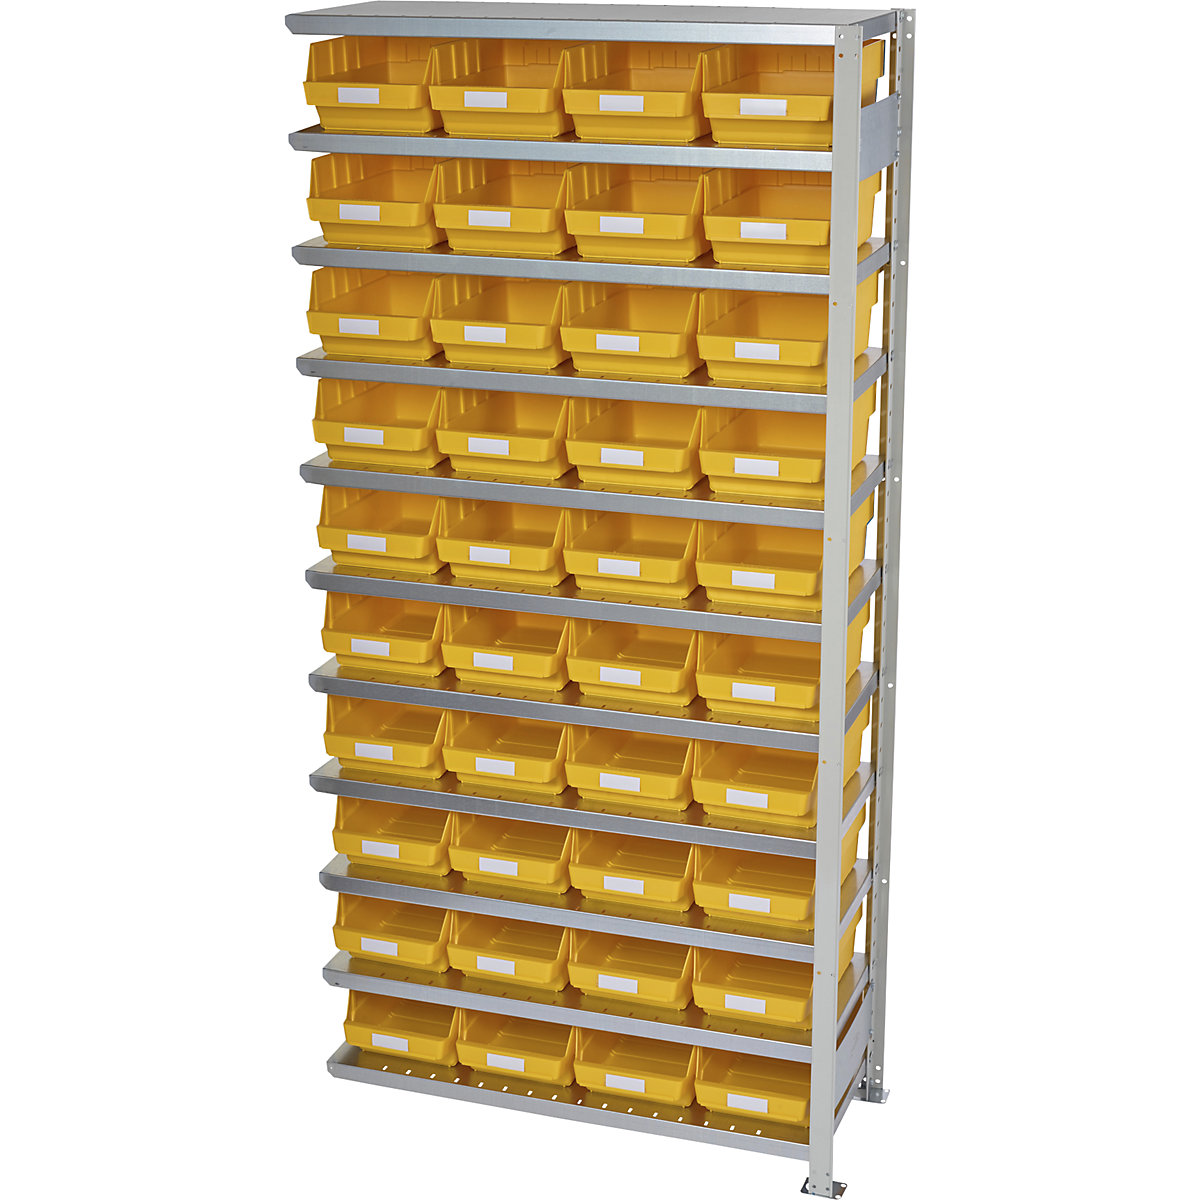 Összedugaszolós állvány dobozokkal – STEMO, állványmagasság 2100 mm, bővítő állvány, 400 mm mély, 40 sárga doboz-27